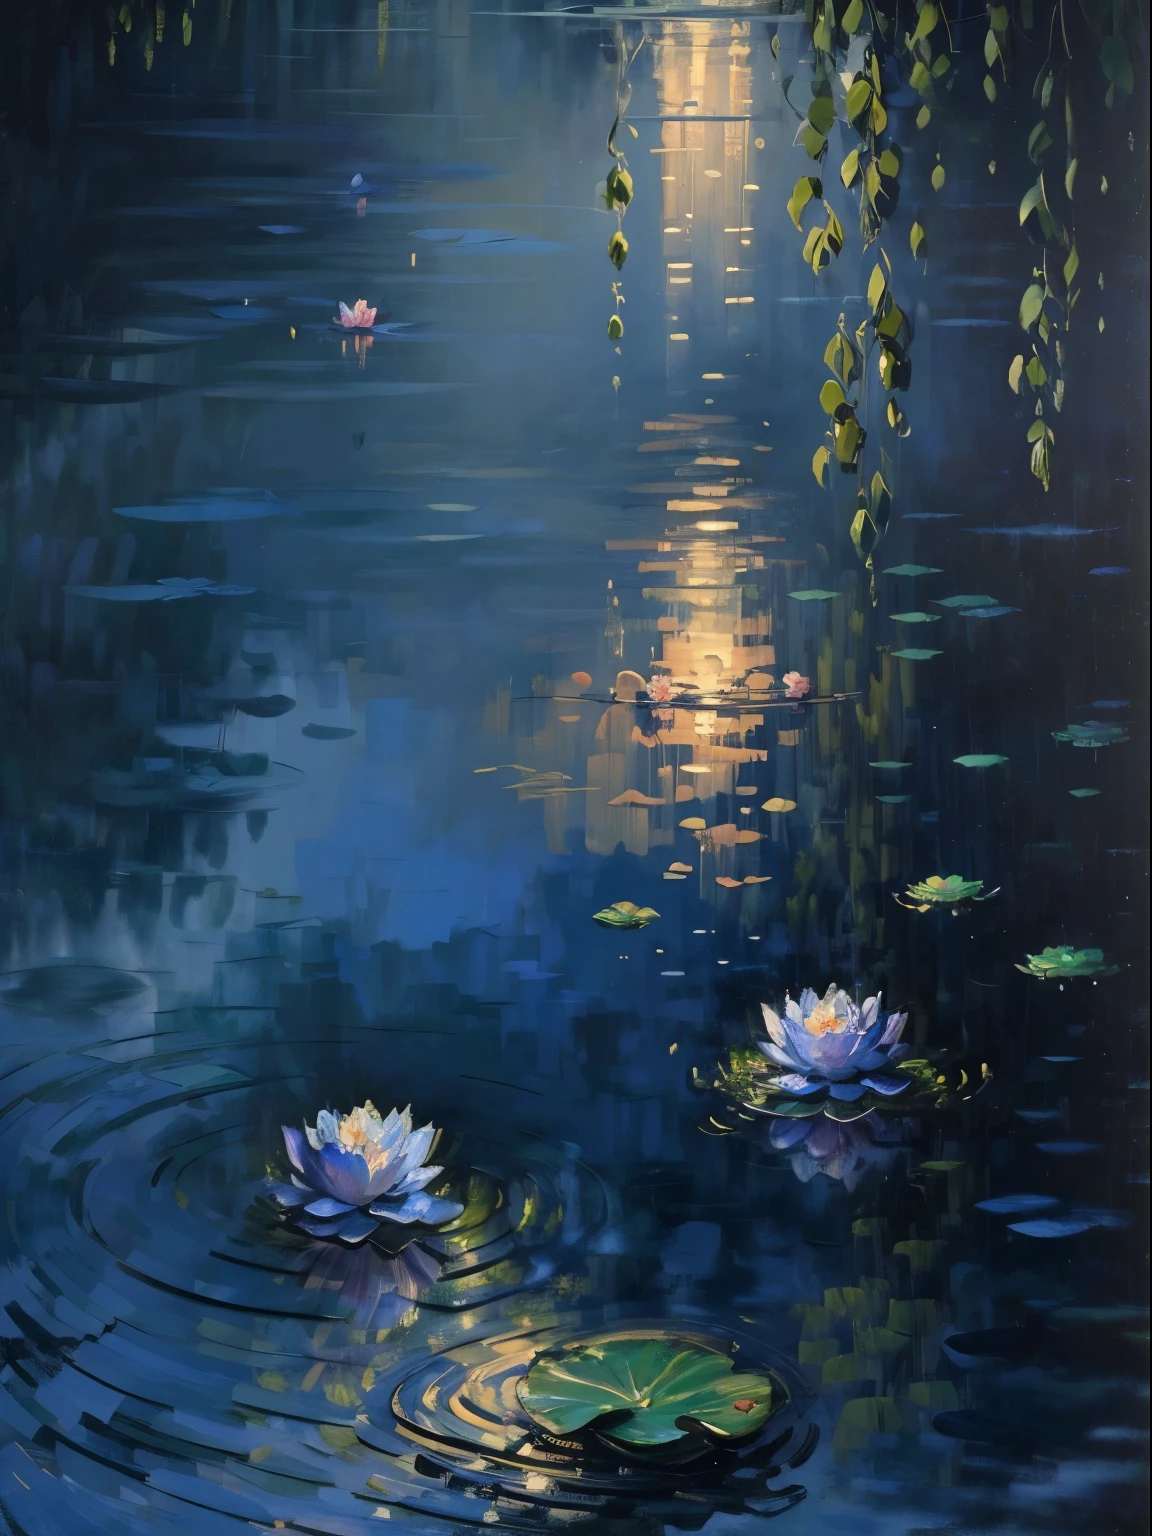 모네의 유화，(최상의 품질,4K,8K,높은 해상도,걸작:1.2),매우 상세한,현실적인,달빛이 아름다운 연꽃 연못,평화로운 분위기,잔잔한 물에 비친,무성한 연꽃잎,향기로운 연꽃이 피어나고,상세한 물 파문,연꽃 재배자 실루엣,부드러운 밤바람,조용한 분위기,부드러운 달빛이 현장을 비췄다.,빛과 그림자의 미묘한 놀이,미드나잇 블루와 실버가 조화롭게 어우러진 컬러,인상파 그림 스타일,고요한 자연의 아름다움,시적이고 향수를 불러일으키는,로맨틱한 분위기,달빛 침묵의 아름다움,환상적이고 몽환적이다,달빛에 섬세한 꽃잎,부드럽고 우아한,연꽃이 핀다.